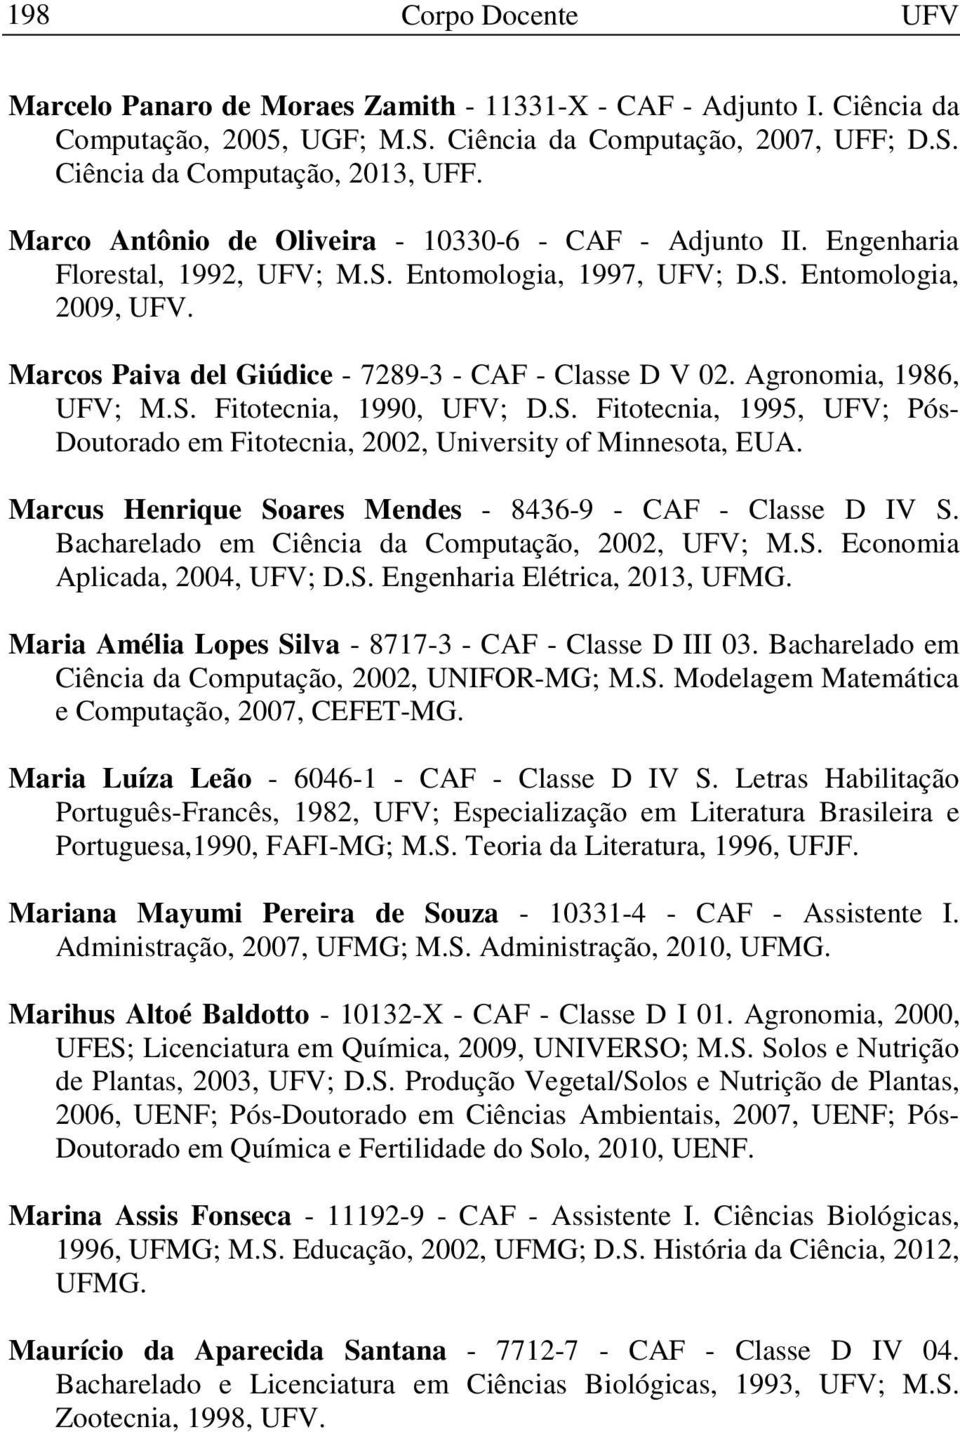 Agronomia, 1986, UFV; M.S. Fitotecnia, 1990, UFV; D.S. Fitotecnia, 1995, UFV; Pós- Doutorado em Fitotecnia, 2002, University of Minnesota, EUA.